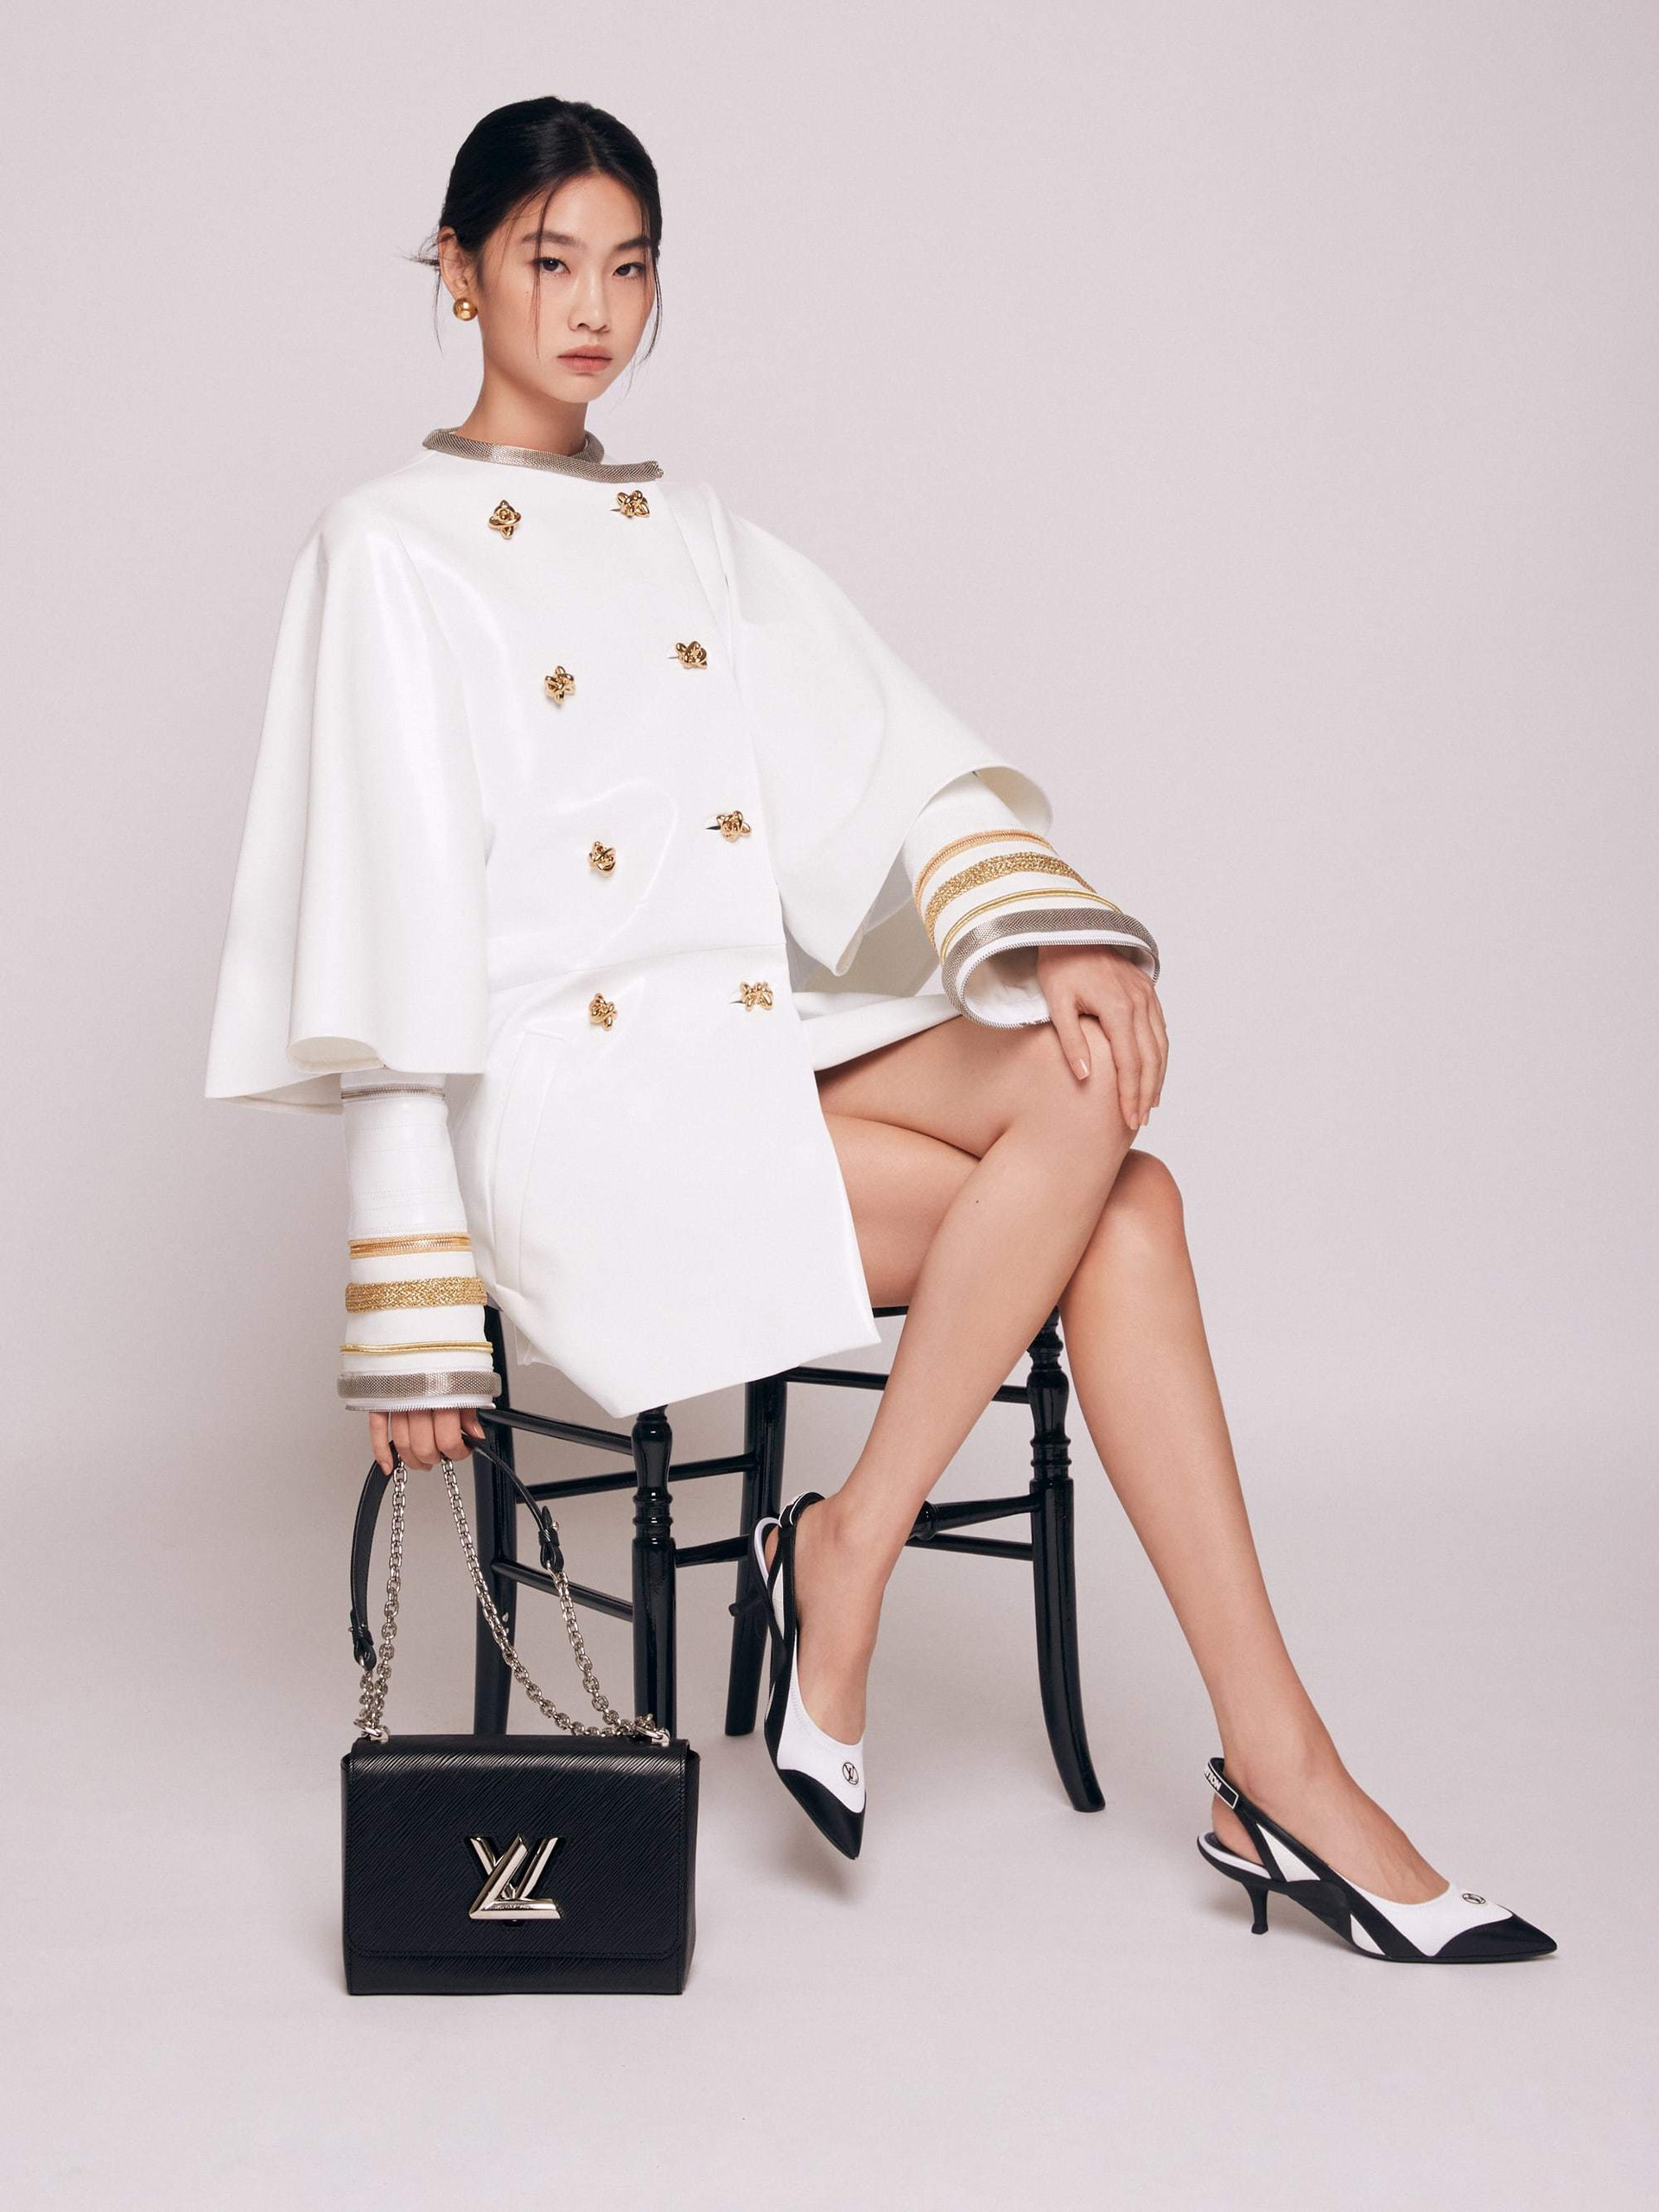 Louis Vuitton không chỉ là thương hiệu thời trang danh tiếng trên toàn thế giới mà còn là biểu tượng của sự sang trọng và thẩm mỹ. Với các sản phẩm từ túi, giày dép đến quần áo và phụ kiện, nhãn hiệu Louis Vuitton chắc chắn sẽ làm mãn nhãn những người yêu thời trang và đẳng cấp.